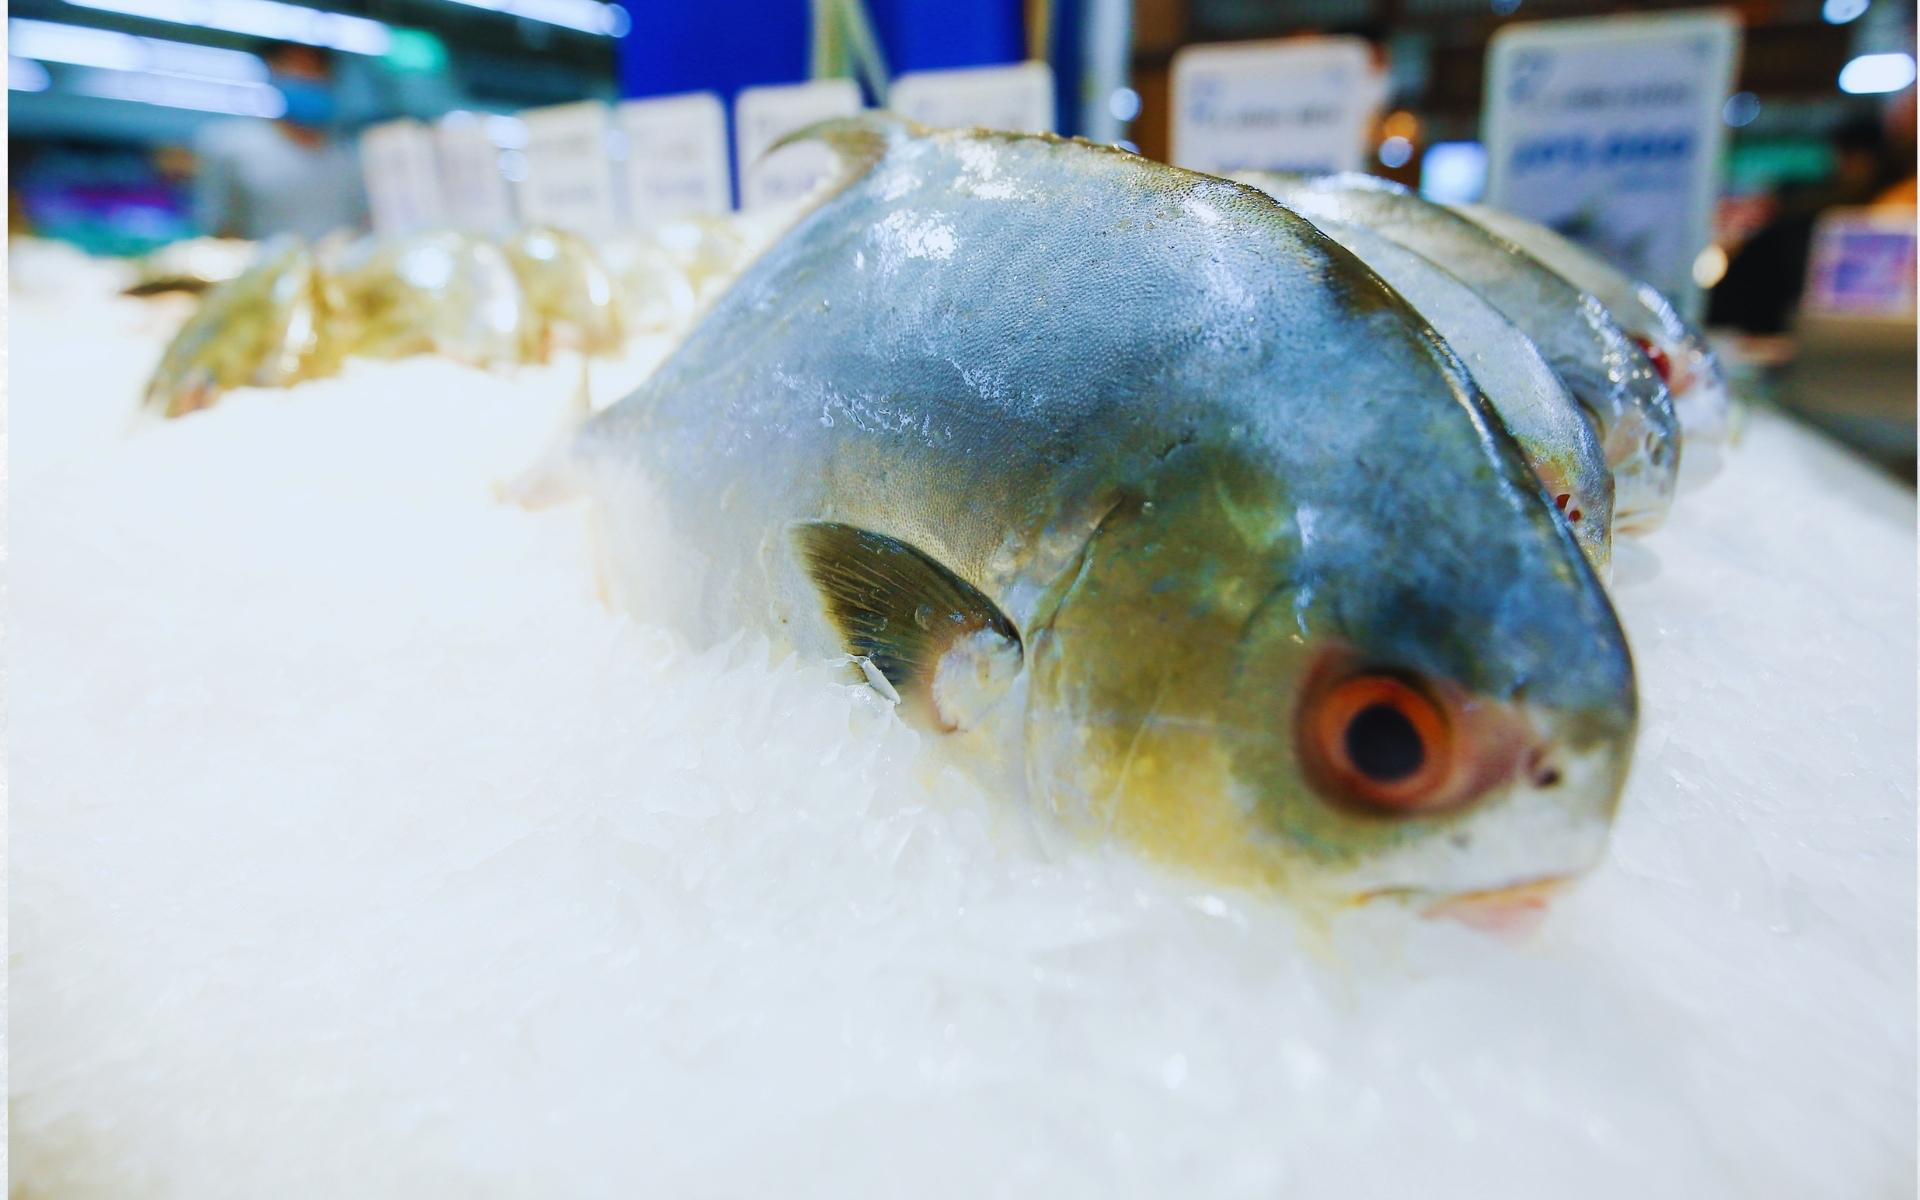 Quy trình chuẩn “chuỗi lạnh” của các sản phẩm hải sản từ khi đánh bắt cho tới bàn ăn gia đình